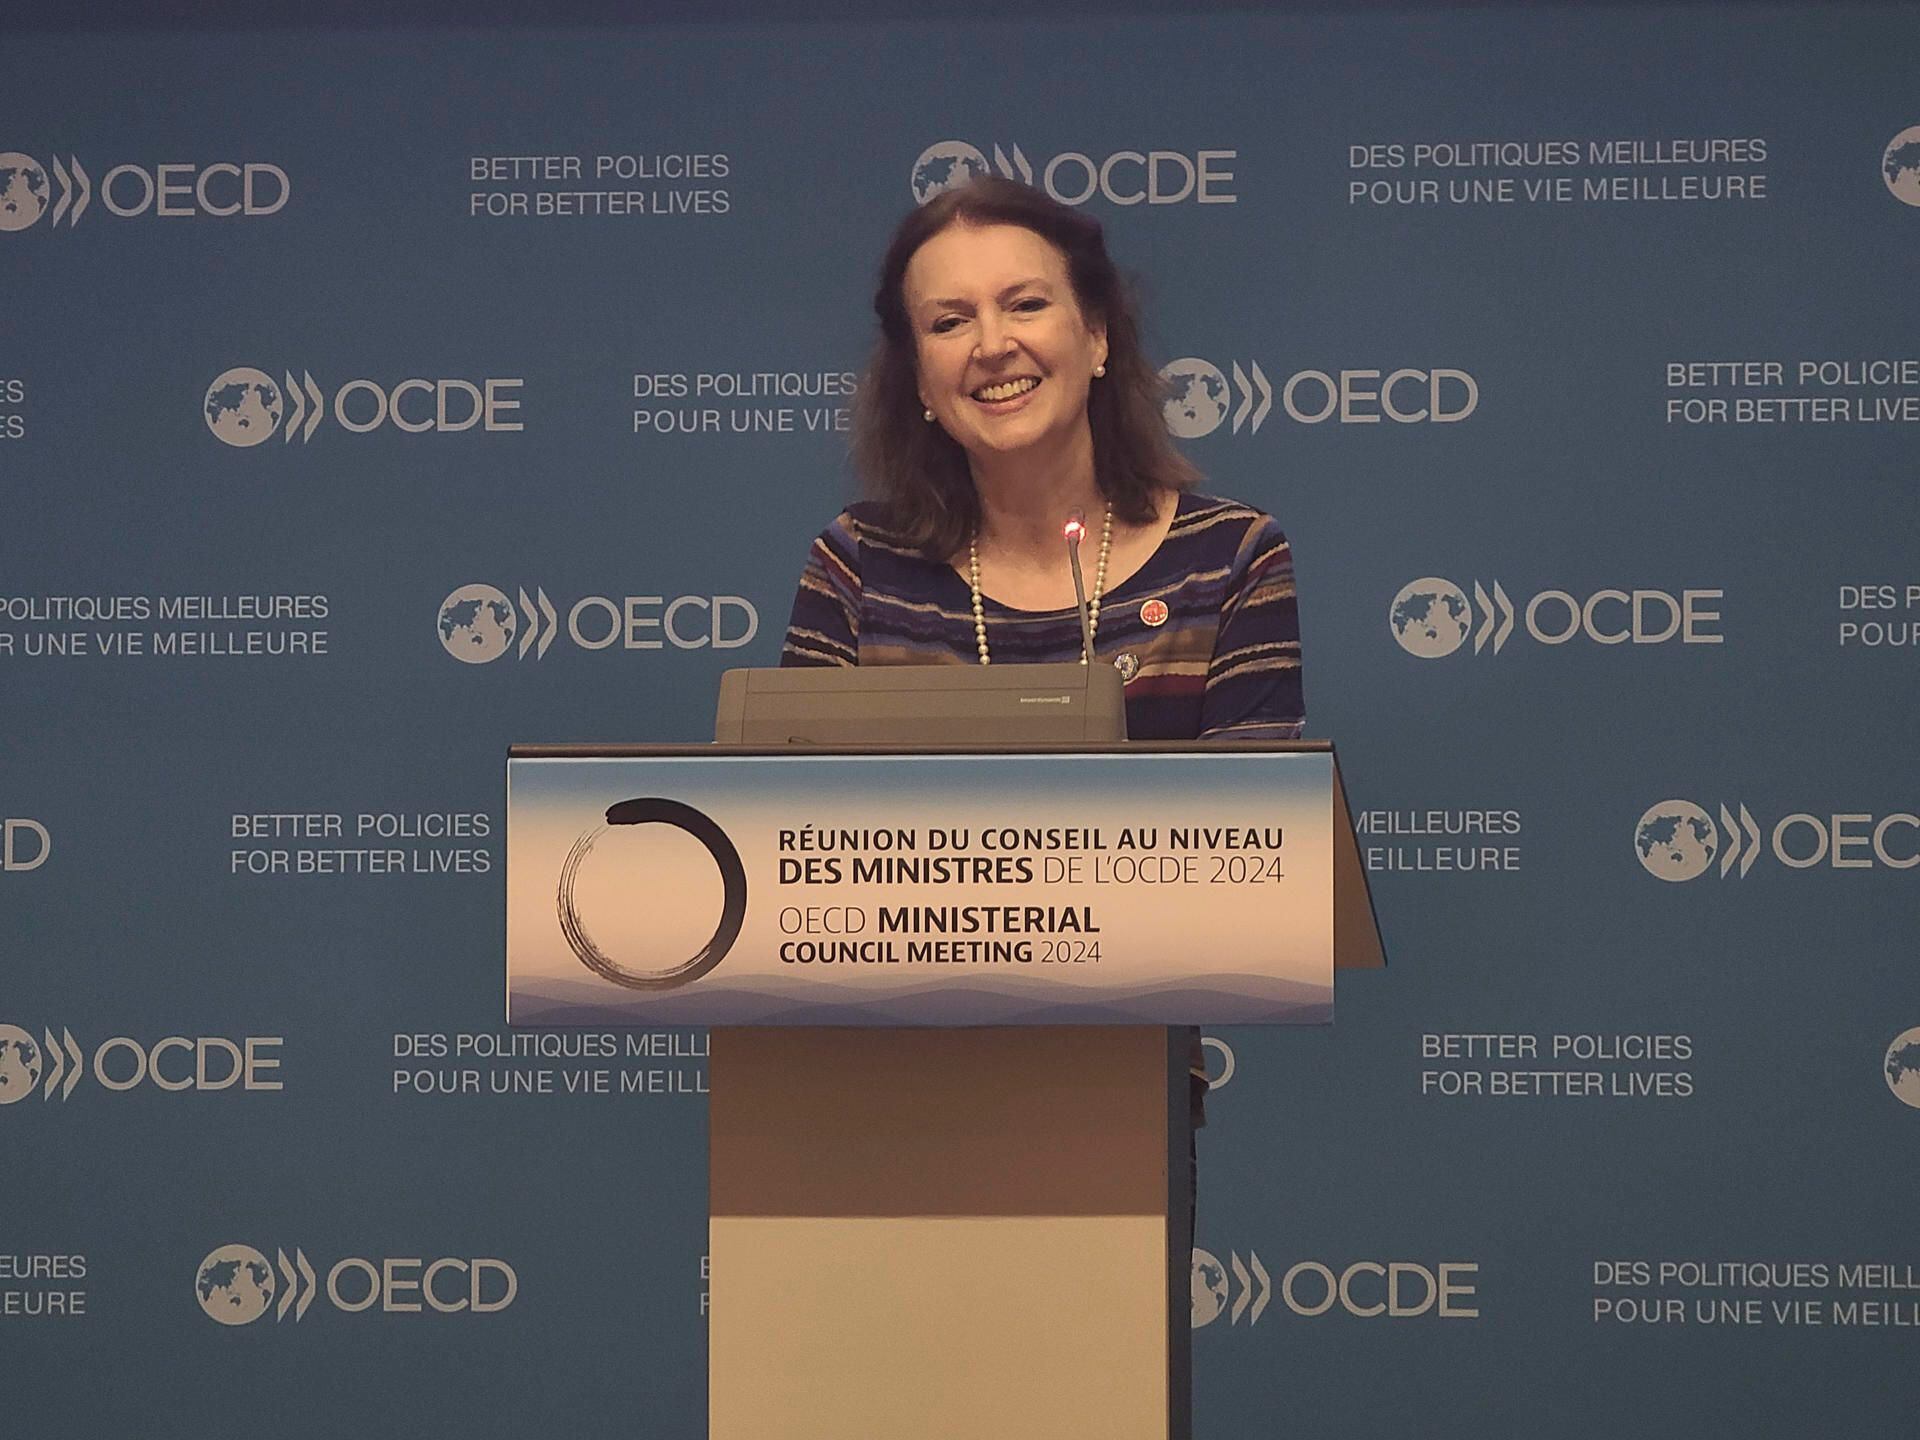 ¿La OCDE apoya a Milei? Dice que las ‘medidas restrictivas’ son para controlar la inflación en Argentina